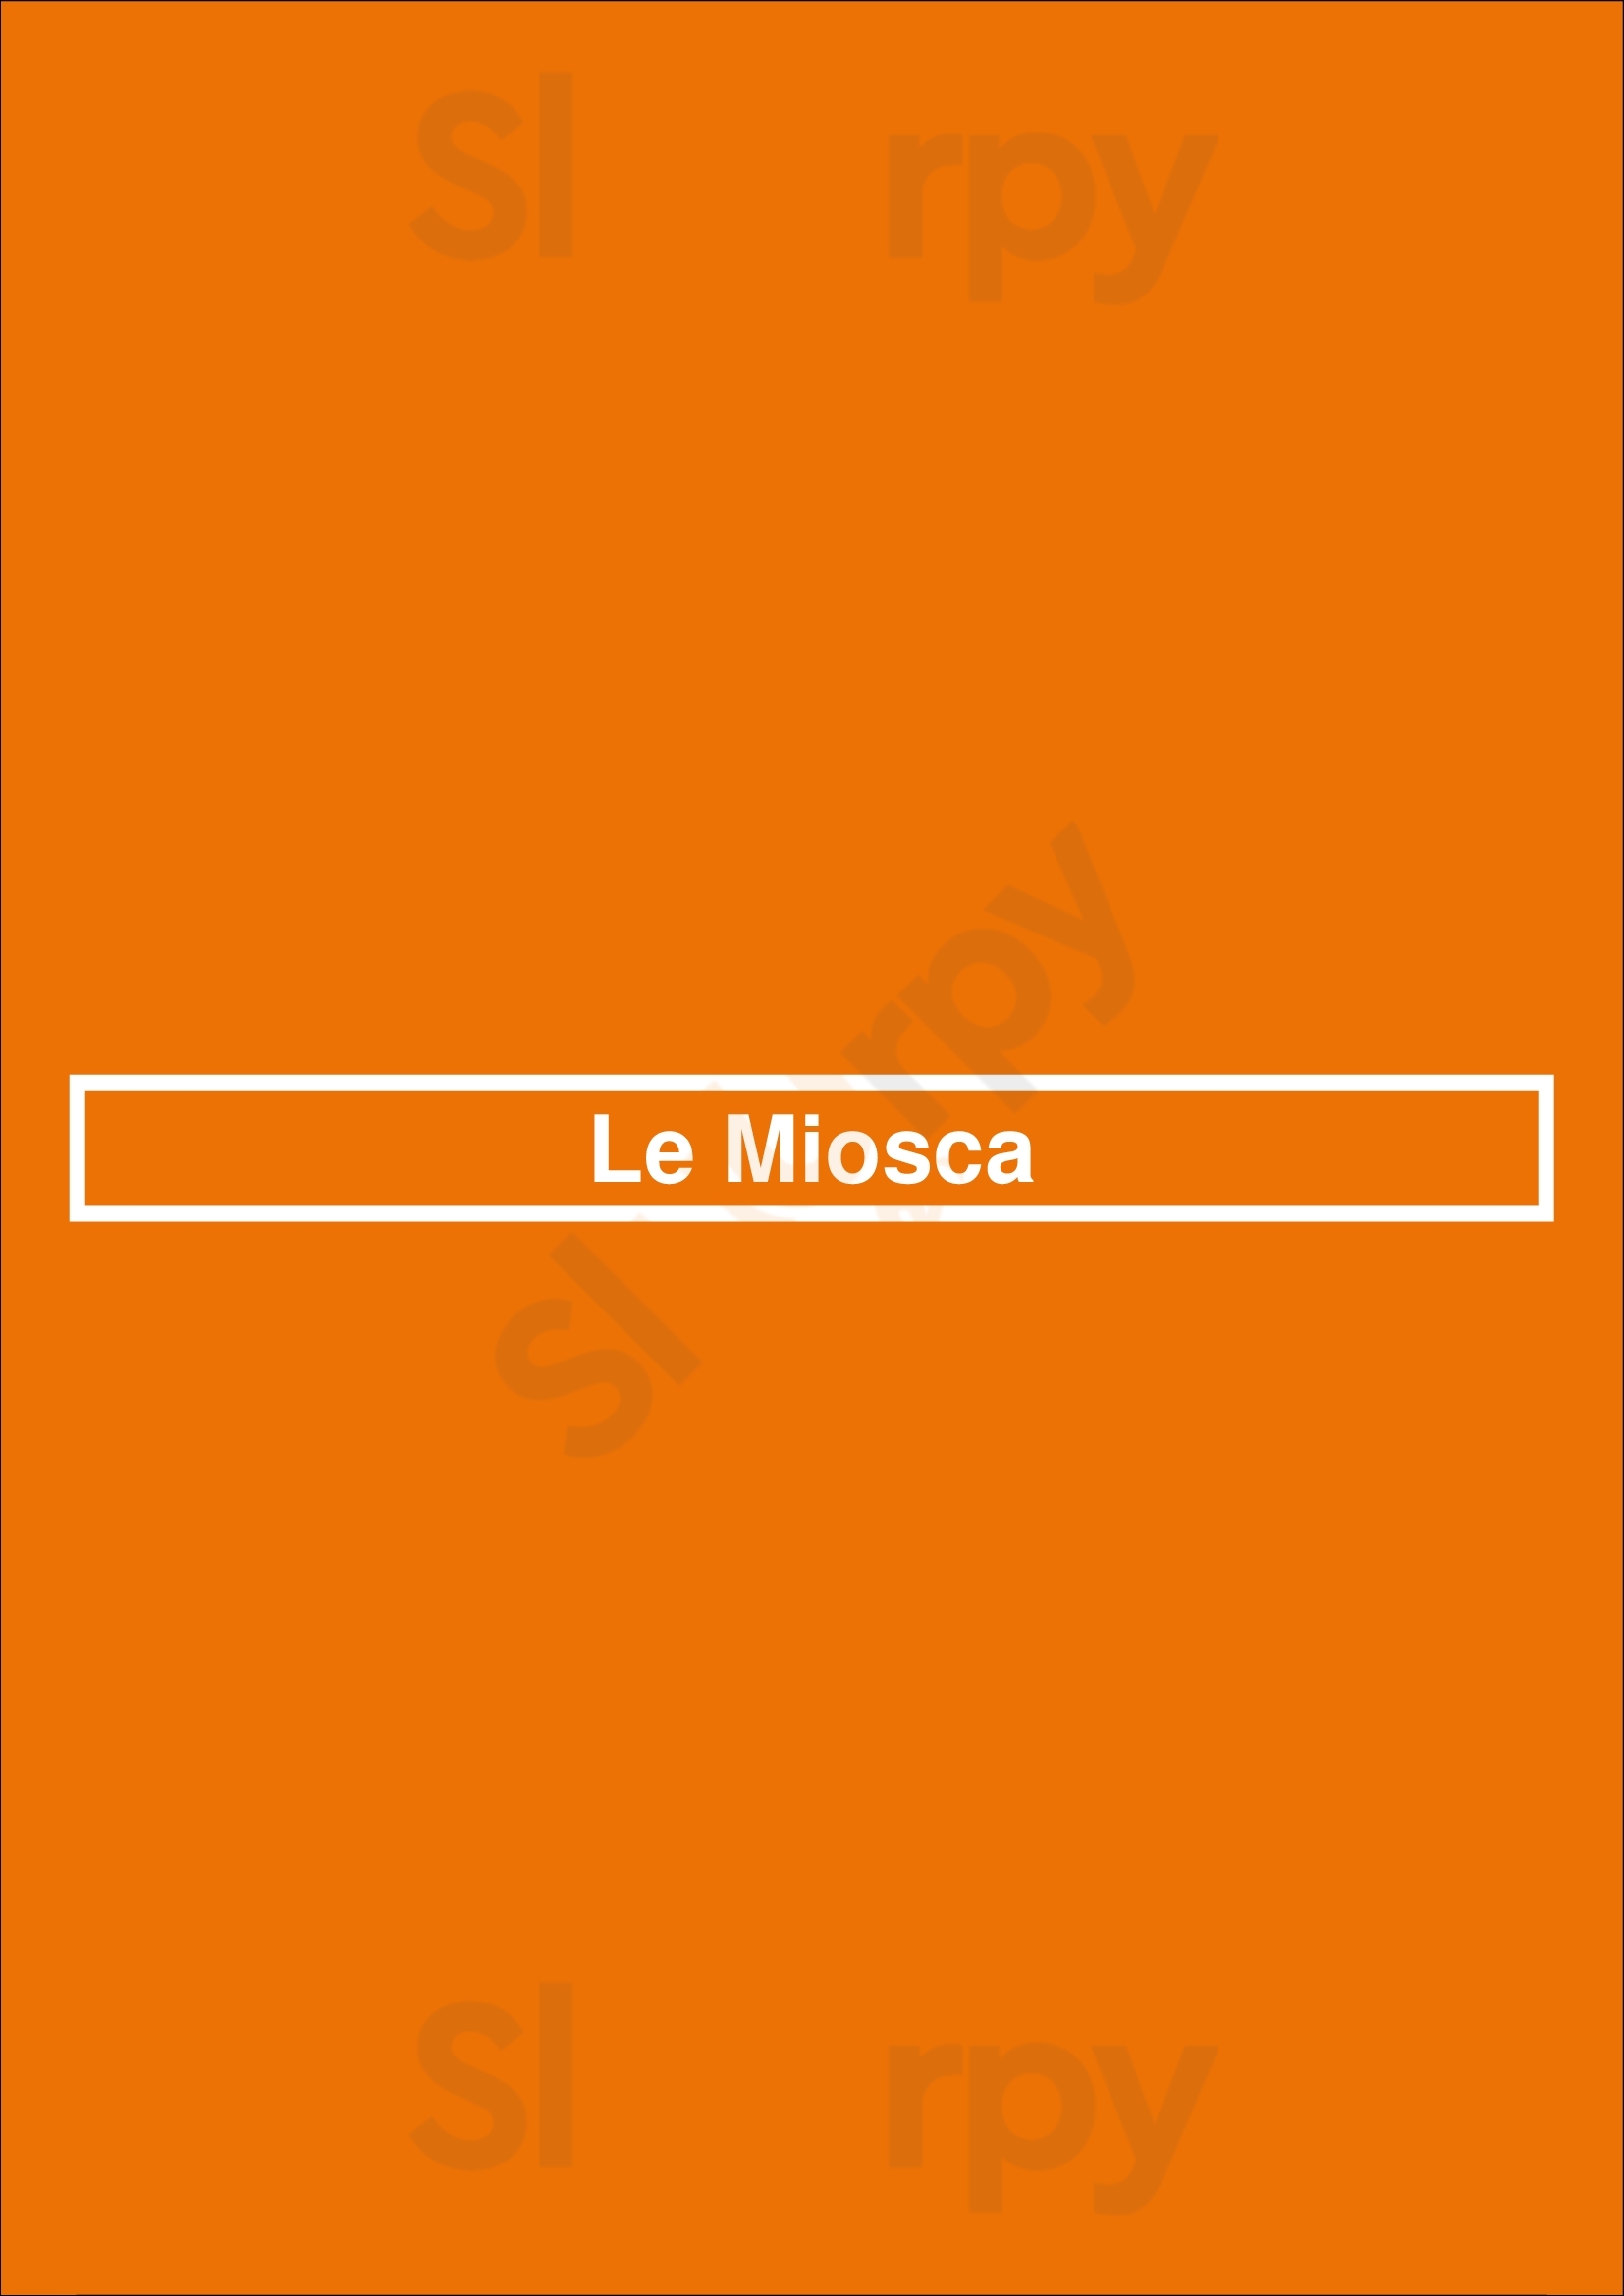 Le Miosca Clichy Menu - 1